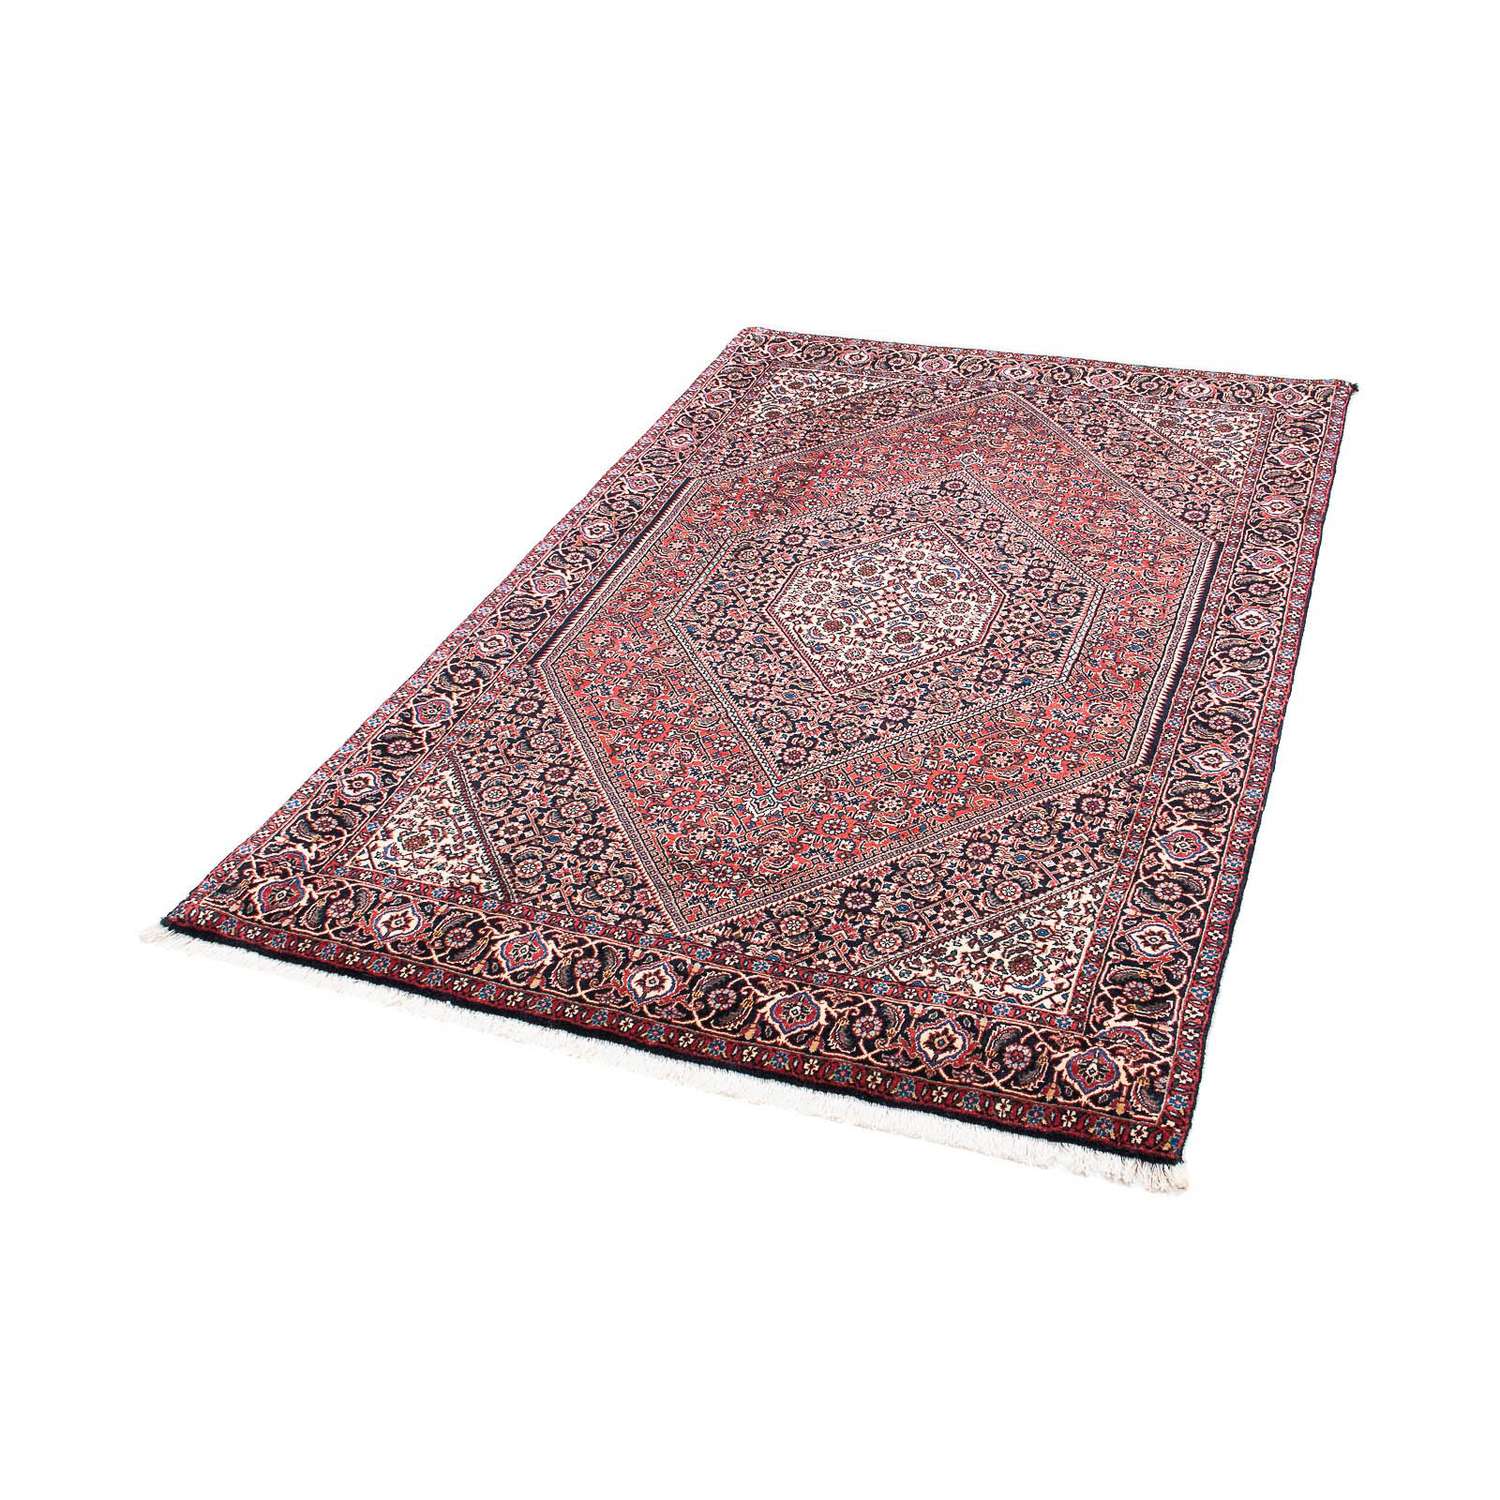 Perzisch tapijt - Bijar - 170 x 110 cm - rood